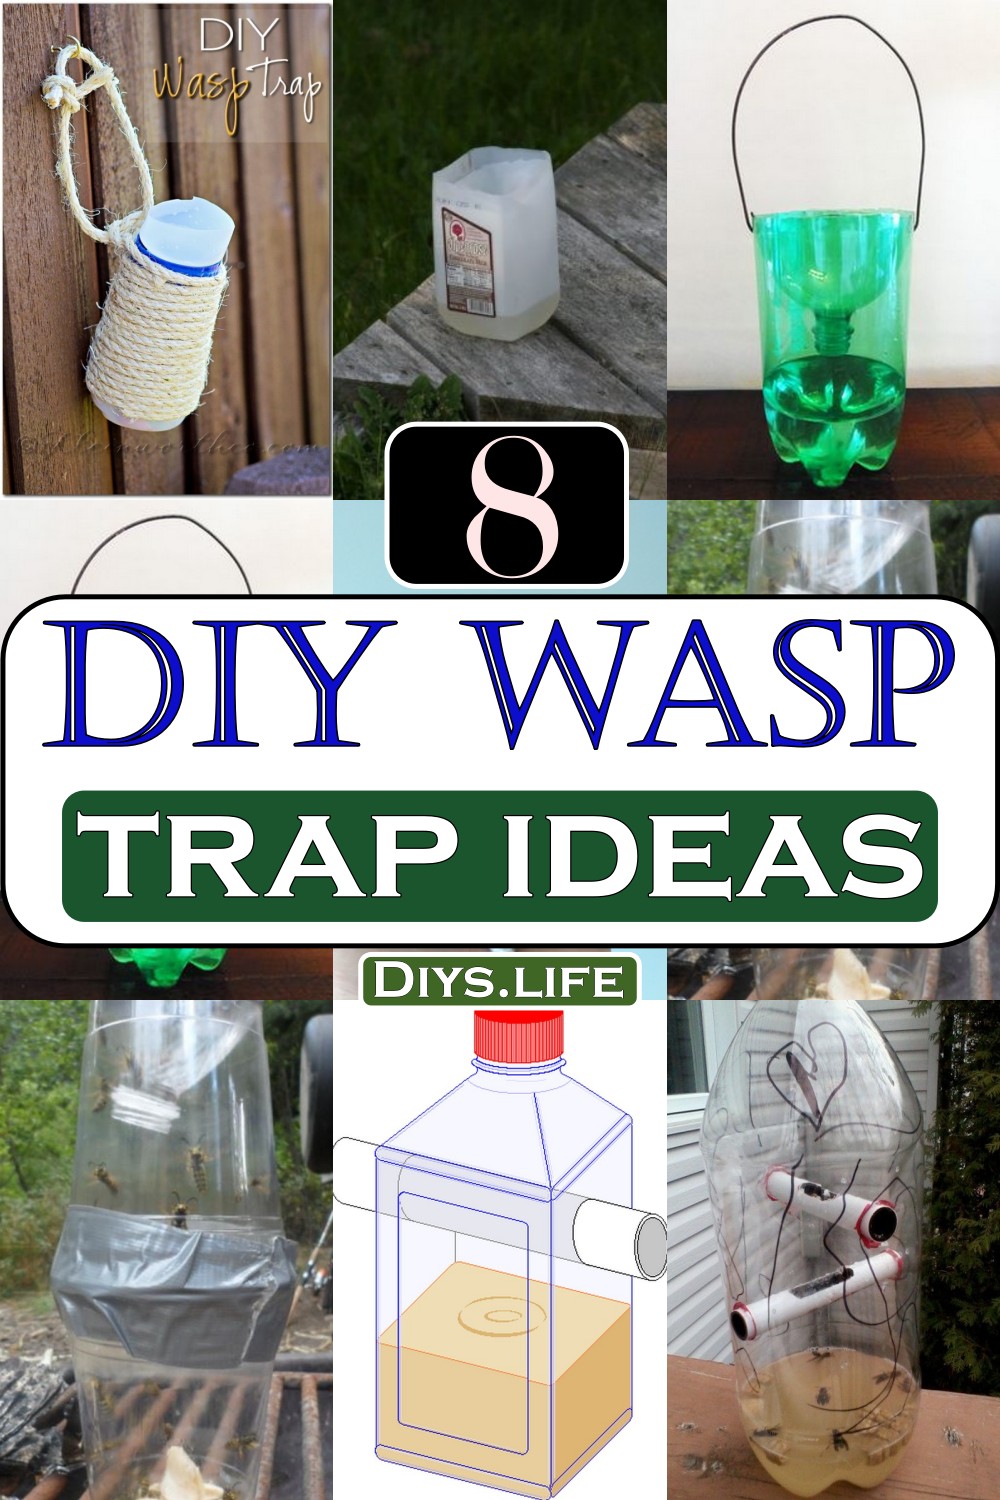 DIY Wasp Trap Ideas